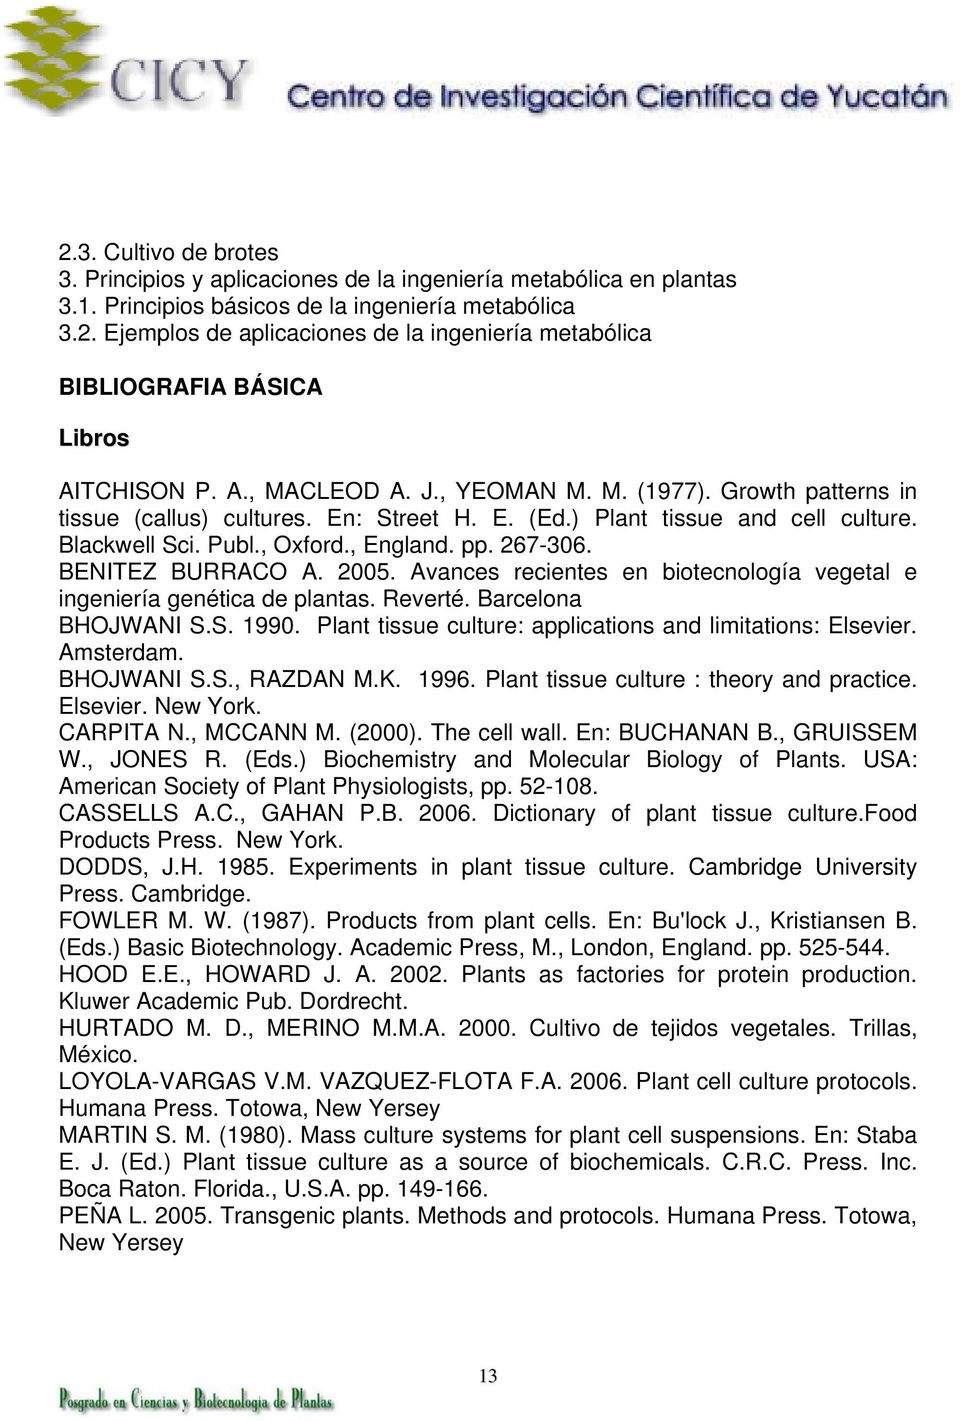 BENITEZ BURRACO A. 2005. Avances recientes en biotecnología vegetal e ingeniería genética de plantas. Reverté. Barcelona BHOJWANI S.S. 1990.